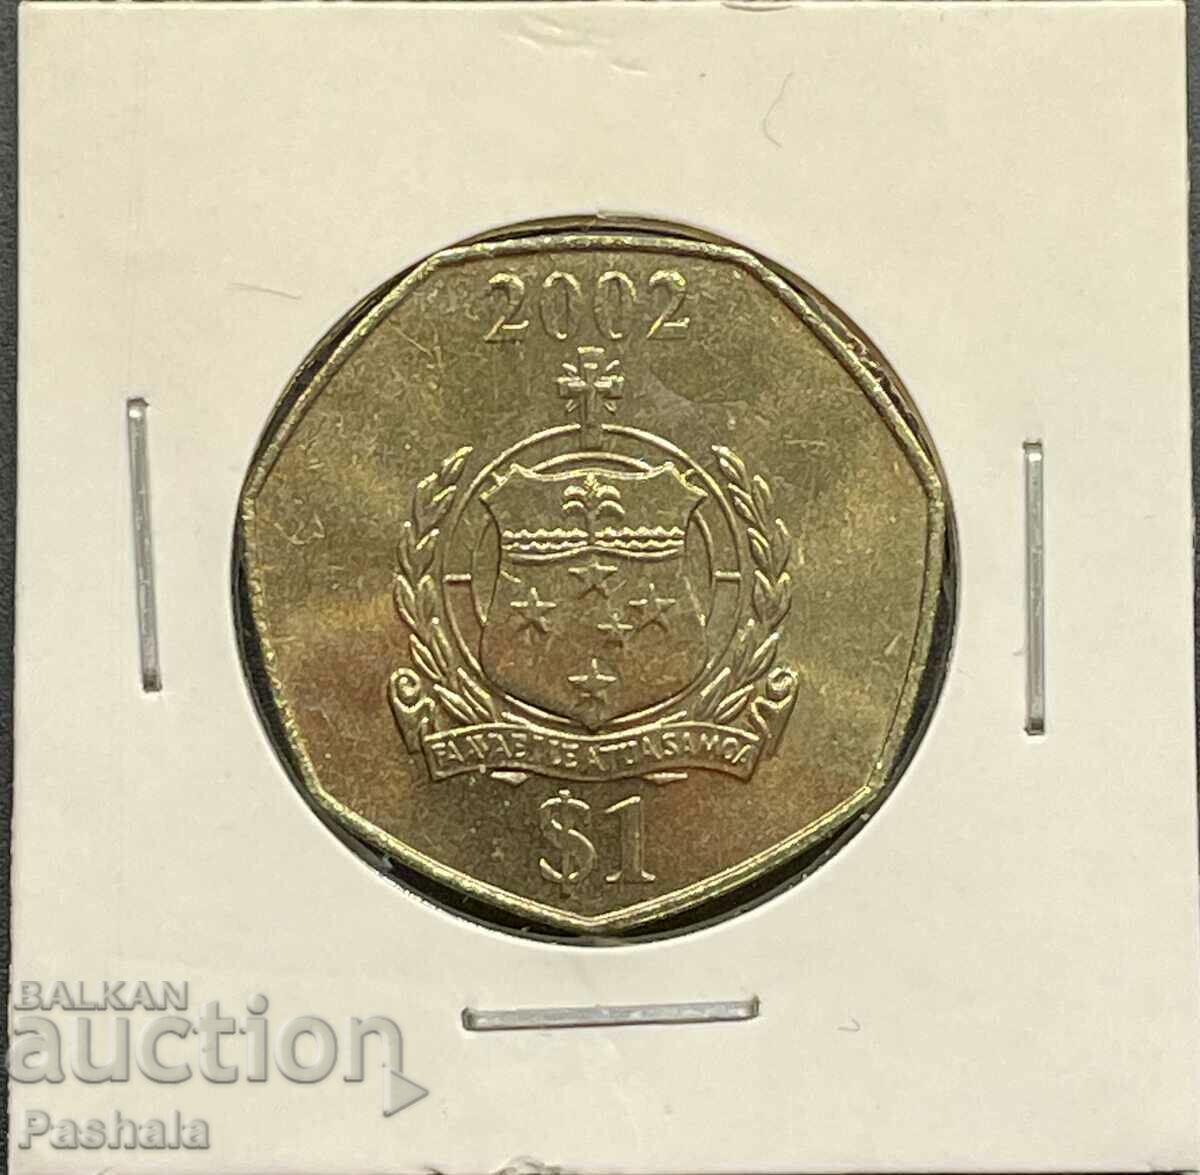 Samoa 1 dollar 2002